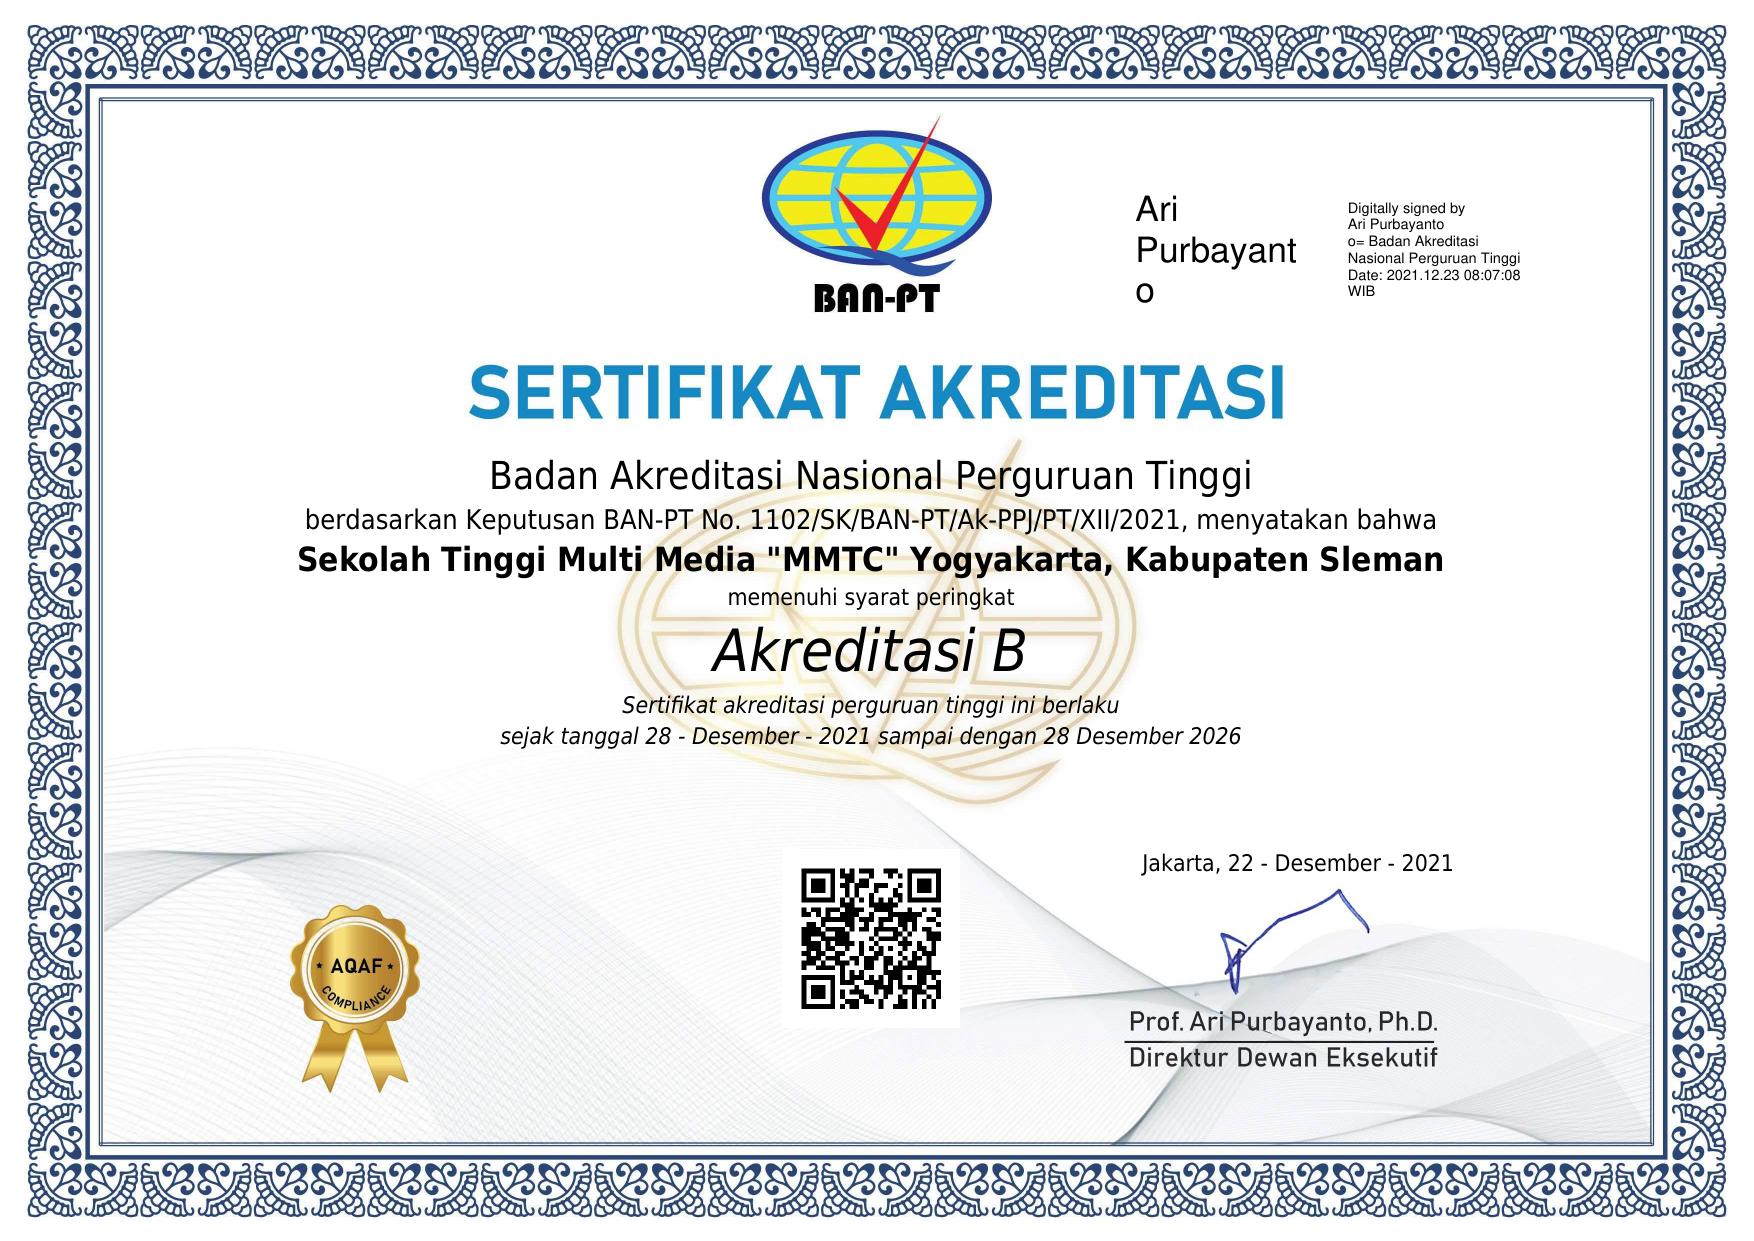 Sertifikat Akreditasi Institusi 2021 (Certificate of Institutional Accreditation 2021)